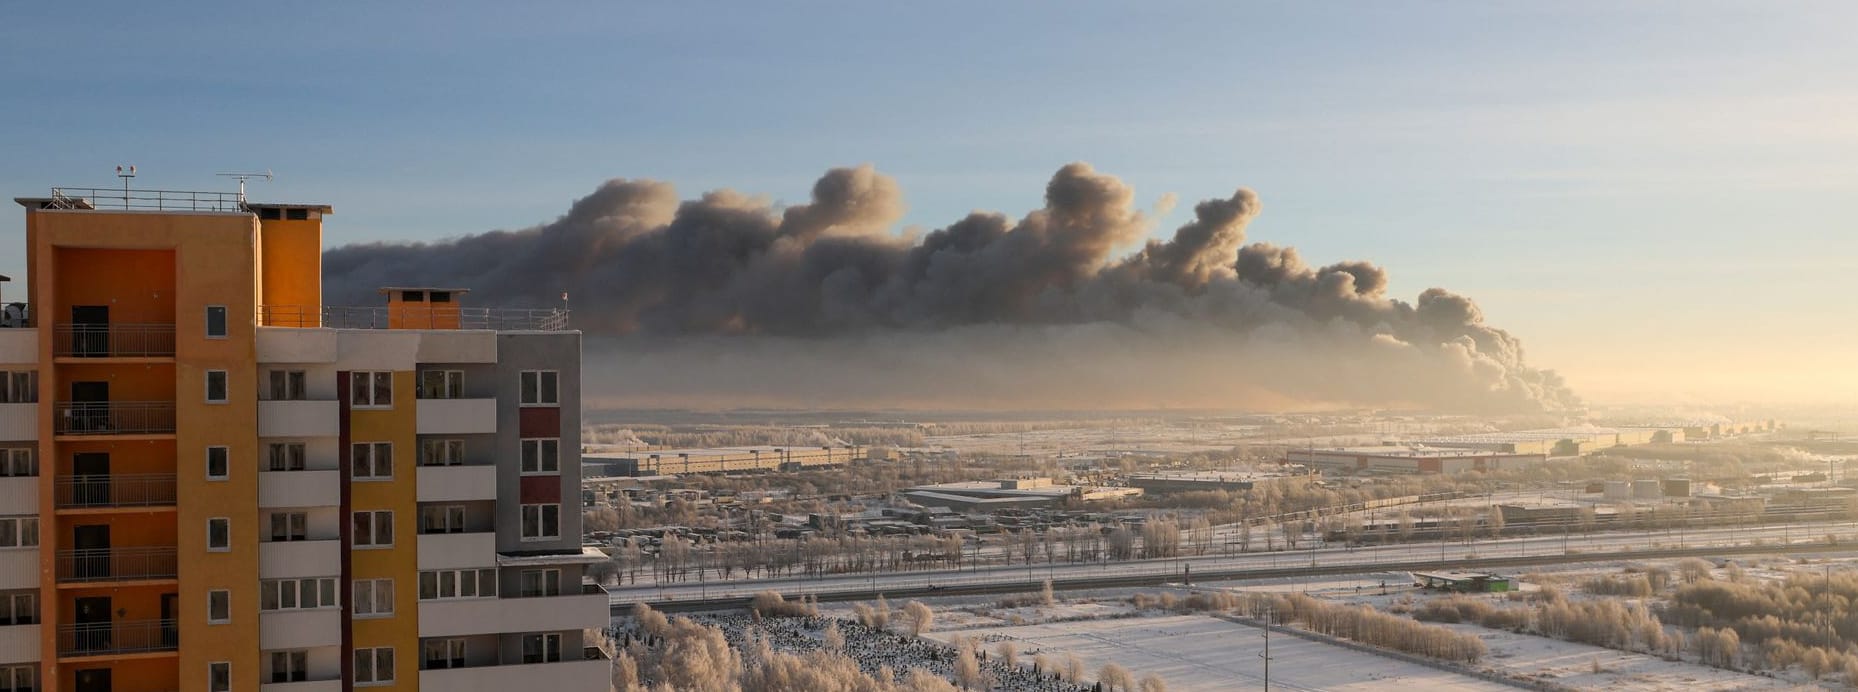 Während dem Brand steht eine massive Rauchsäule über St. Petersburg.